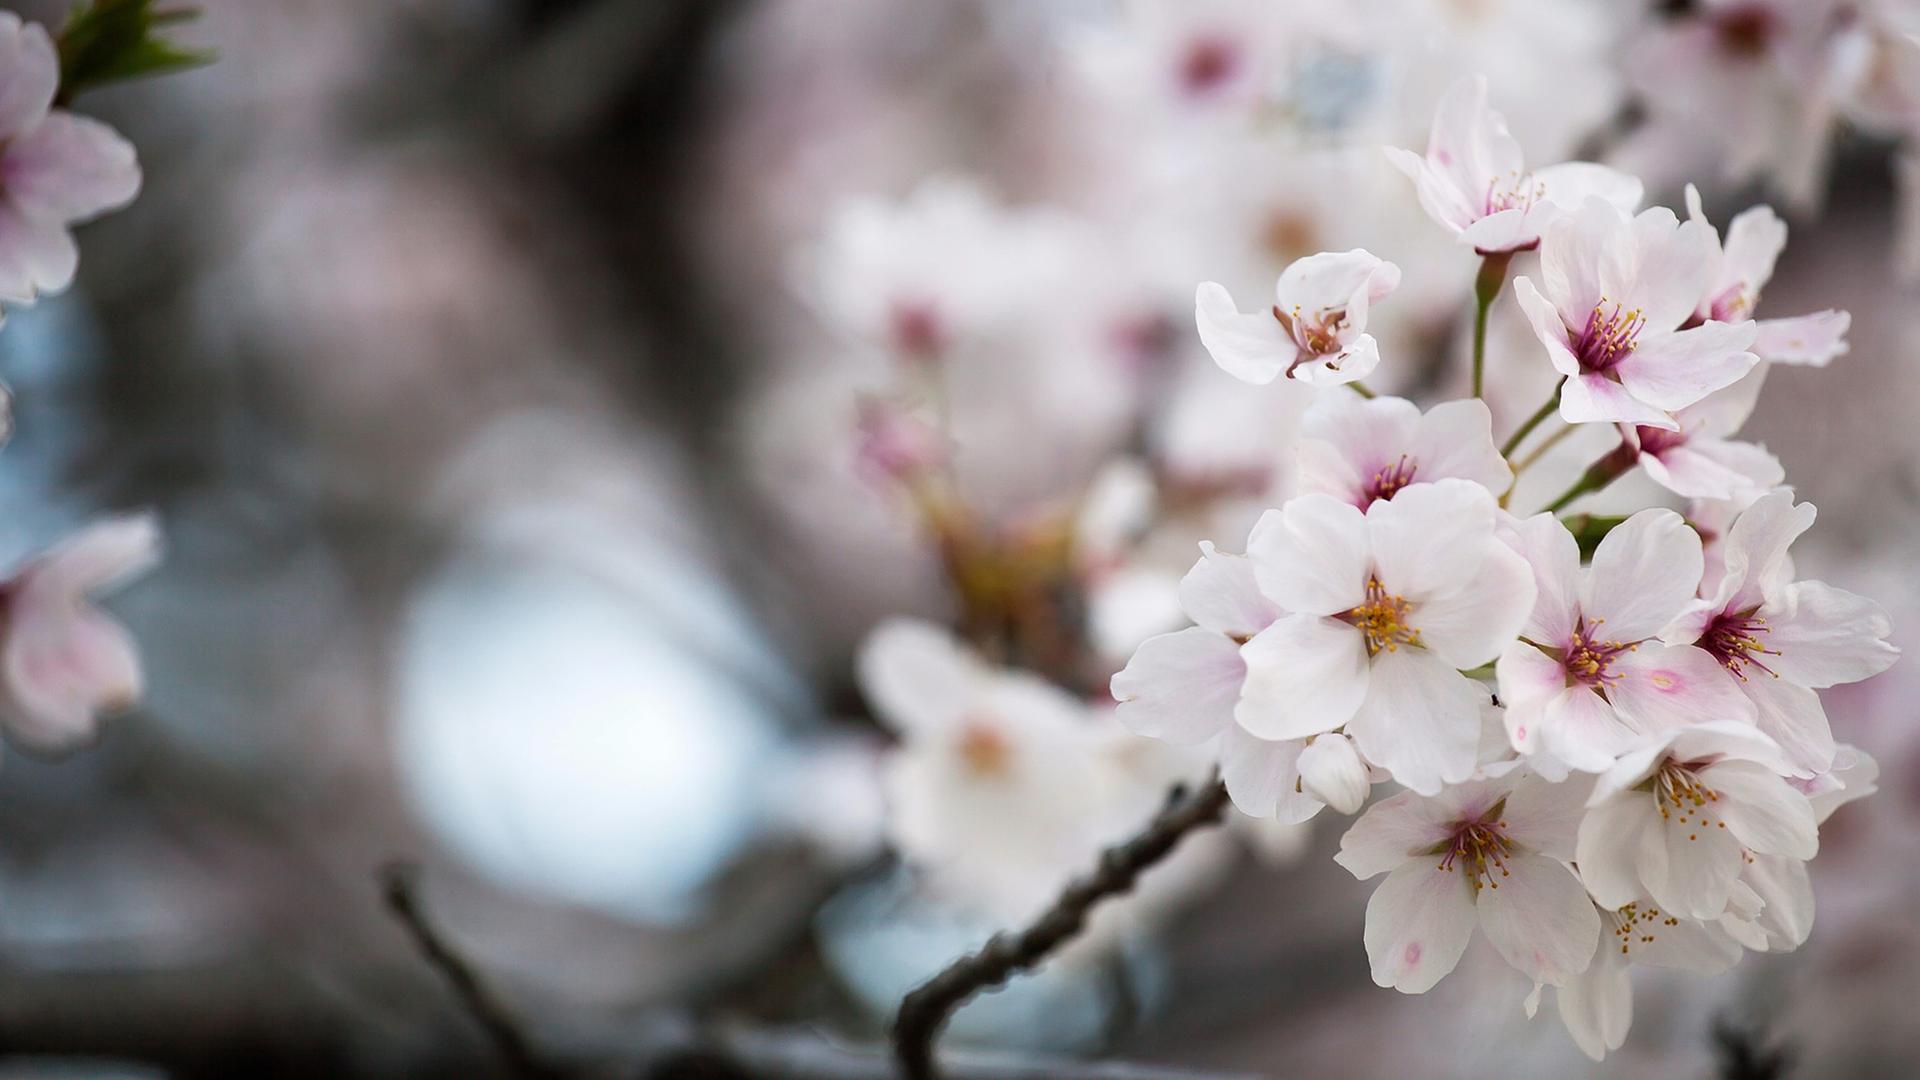 Kirschblüten in Hiroshima: Die Kirschblüten, oder "Sakura", wie sie genannt werden, haben in Japan eine große kulturelle Bedeutung. Sie stehen für den Neubeginn und das Vergängliche. Jedes Jahr zur Kirschblüte versammelt man sich unter dem Baum zum Hanami, eine Art Picknick mit Freunden, Familie oder Kollegen.